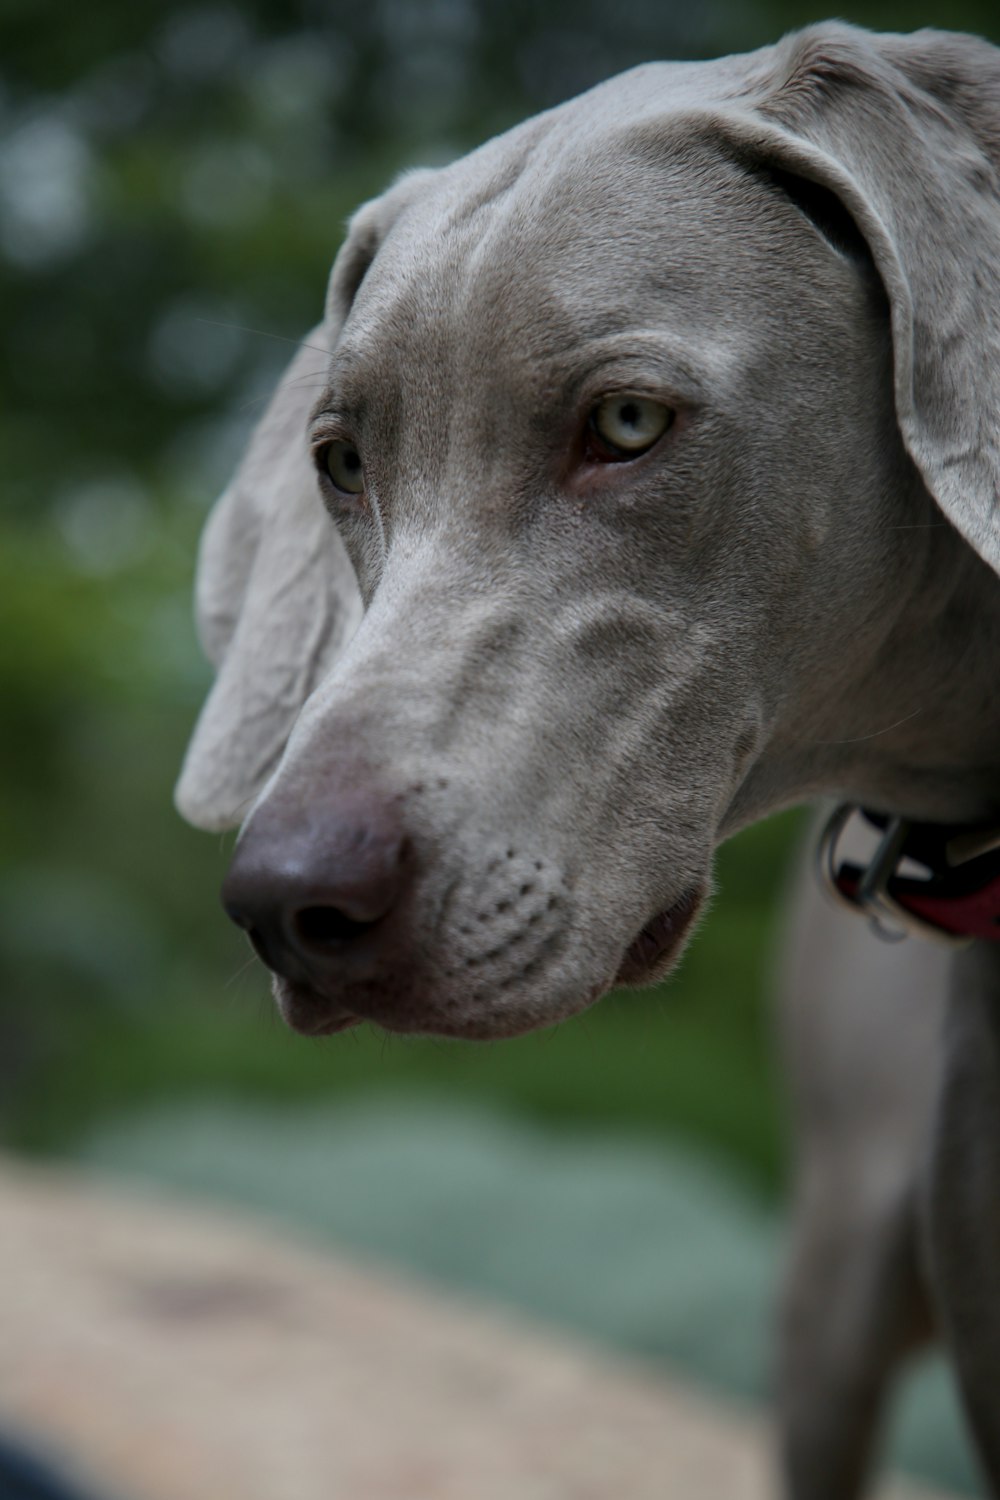 gray short coated dog in tilt shift lens